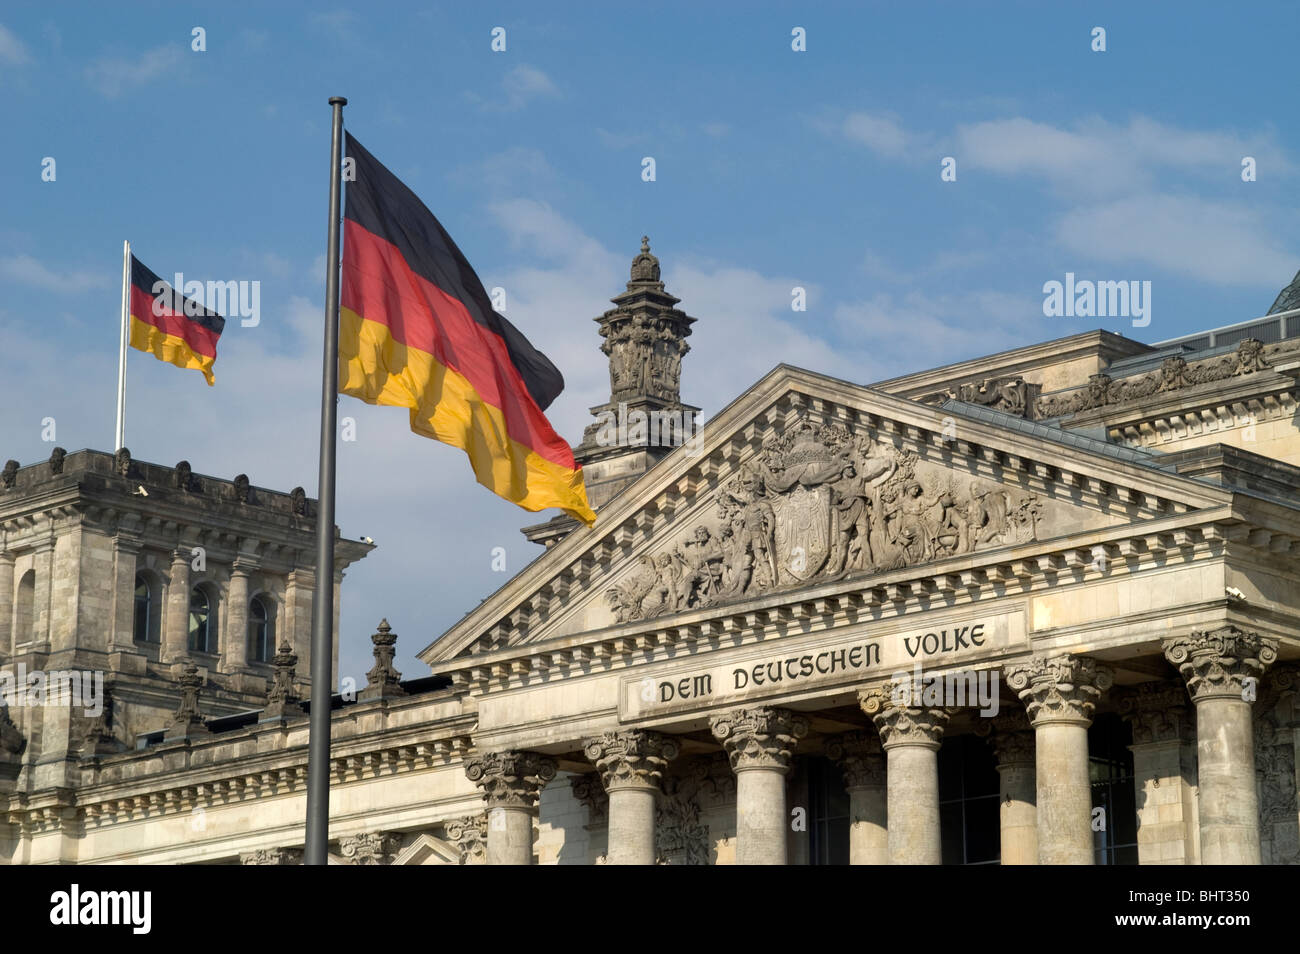 Reichstag, Reichstagsgebäude, Berlín, que alberga el Bundestag, la cámara baja del parlamento alemán, construido en 1894. Alemania Foto de stock